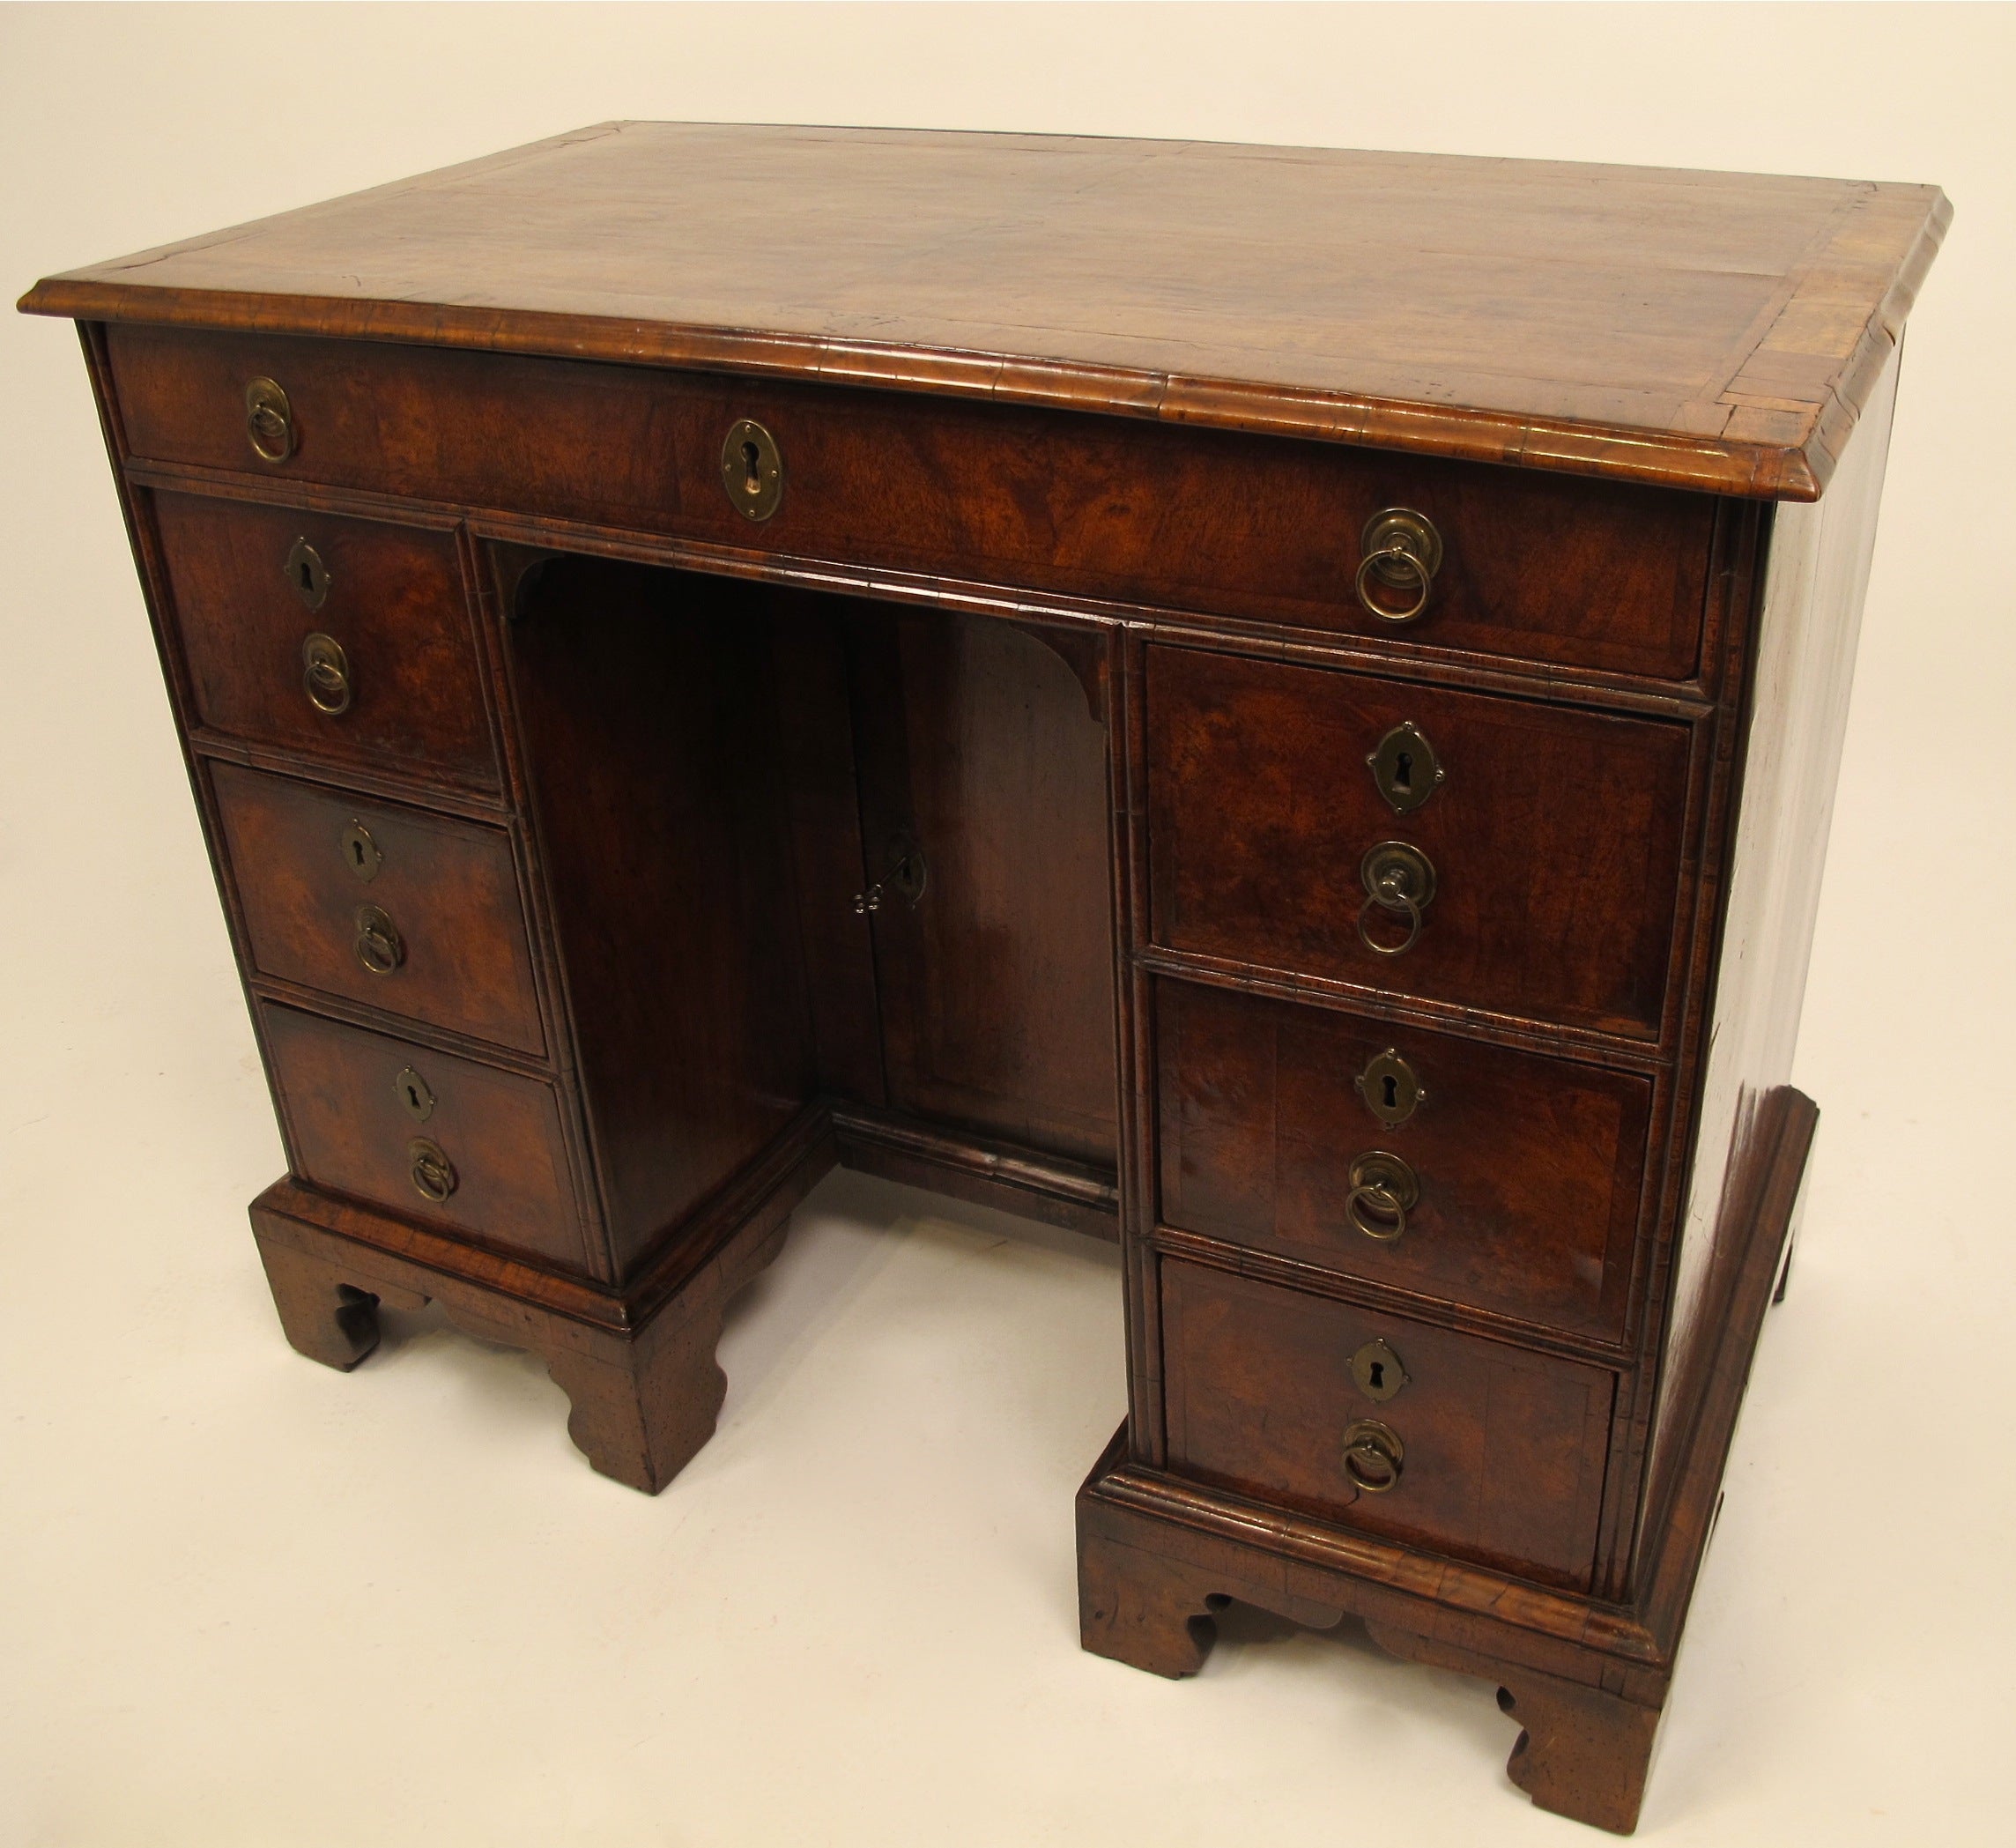 Englischer Walnussholz-Schreibtisch aus dem 18. Jahrhundert